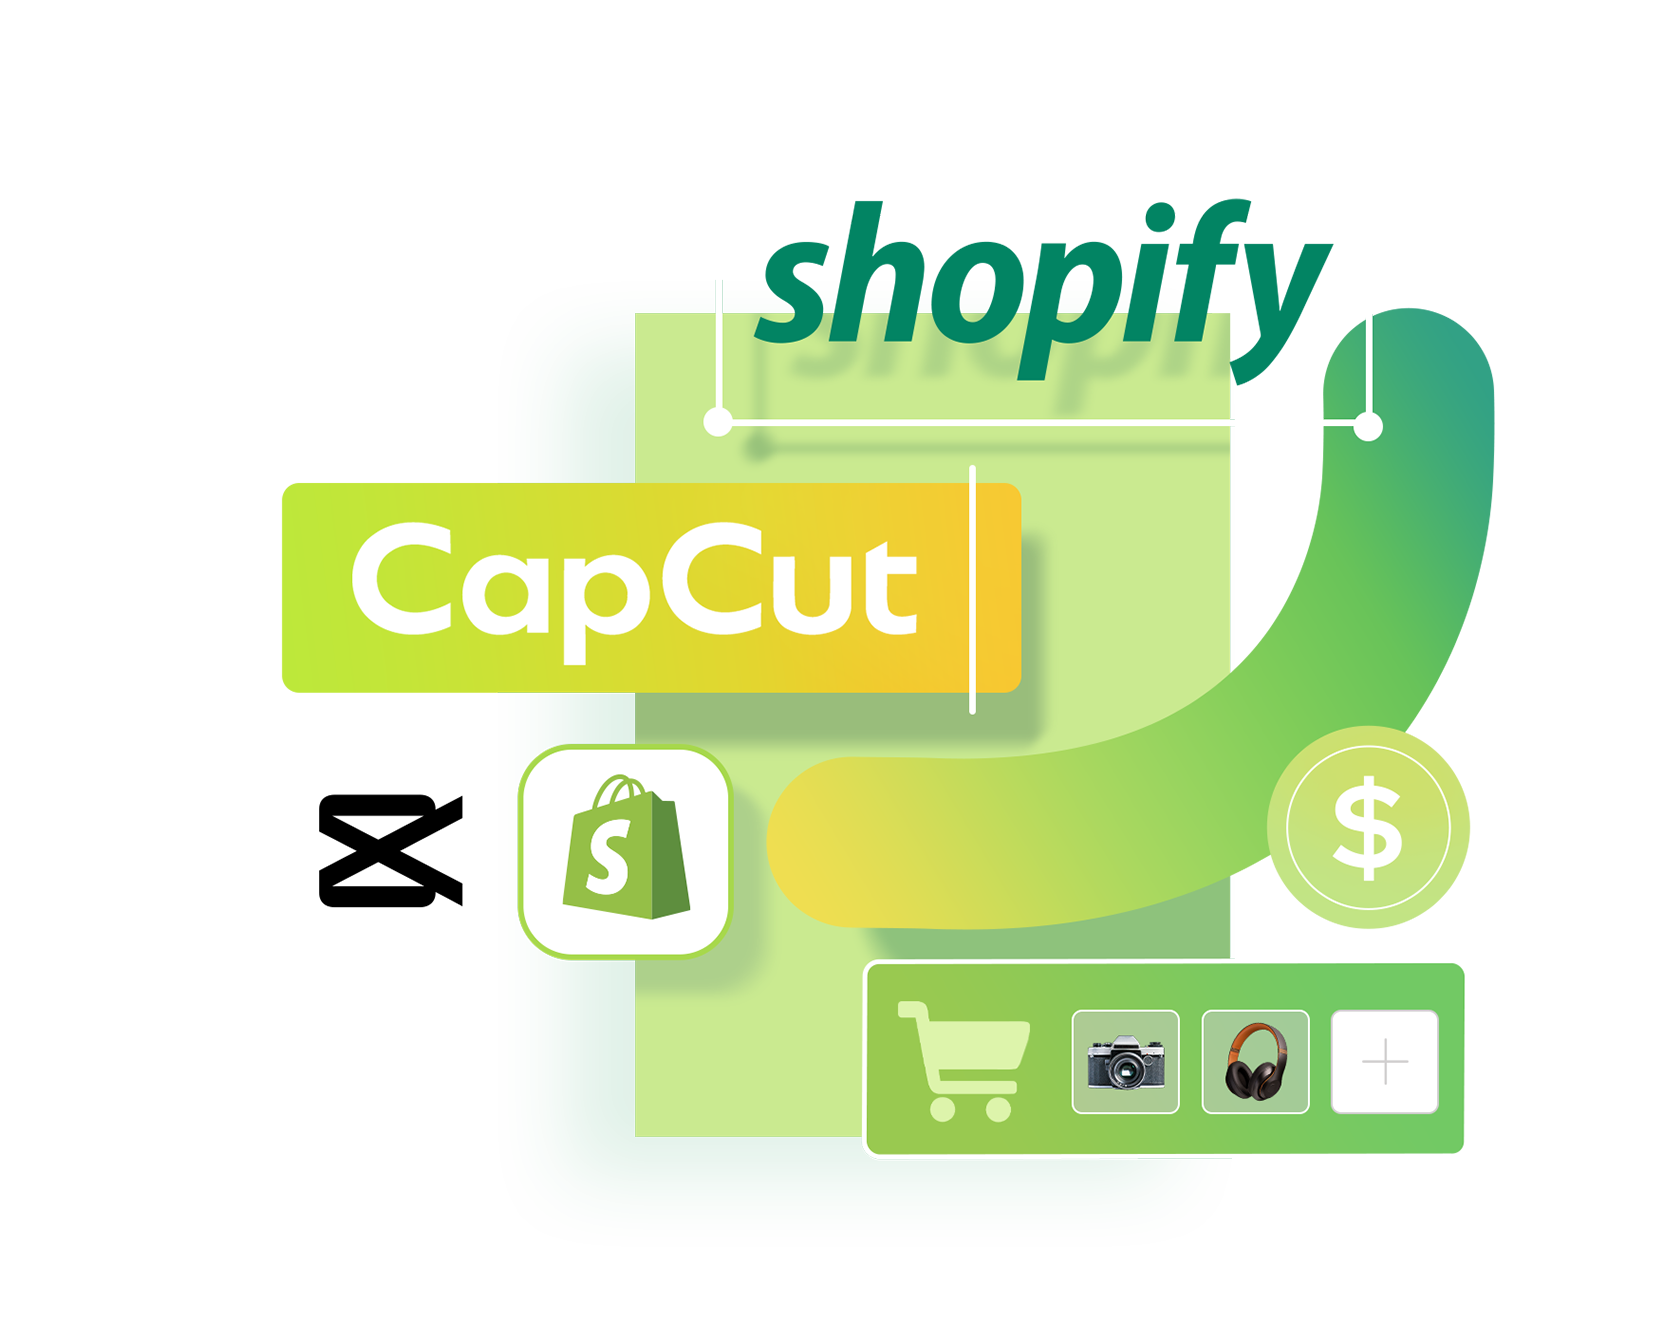 CapCut Equipe-se com Shopify